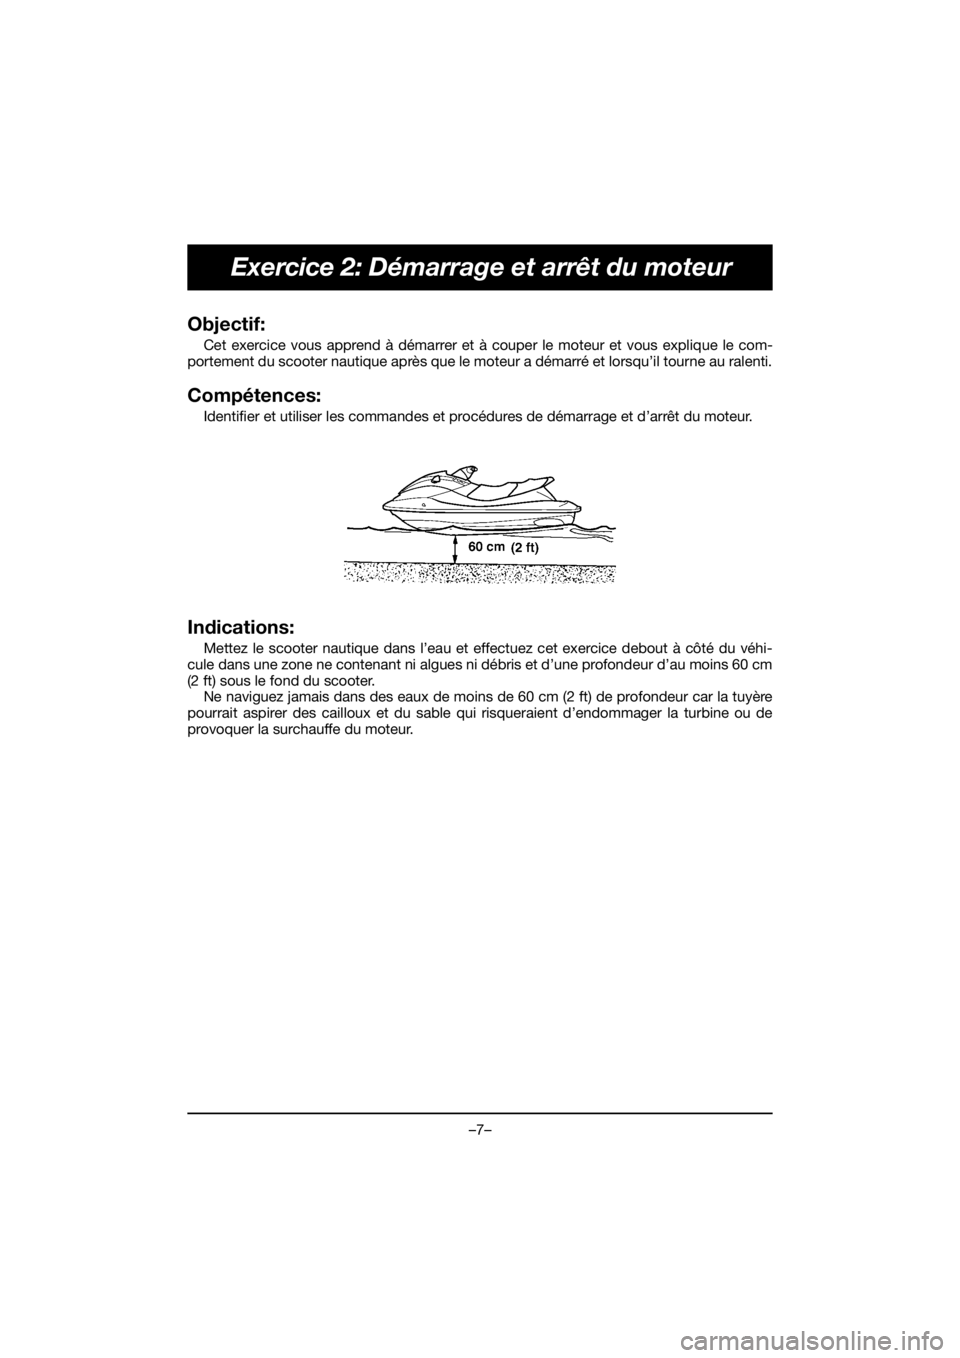 YAMAHA VX DELUXE 2021  Notices Demploi (in French) –7–
Exercice 2: Démarrage et arrêt du moteur
Objectif: 
Cet exercice vous apprend à démarrer et à couper le moteur et vous explique le com-
portement du scooter nautique après que le moteur 